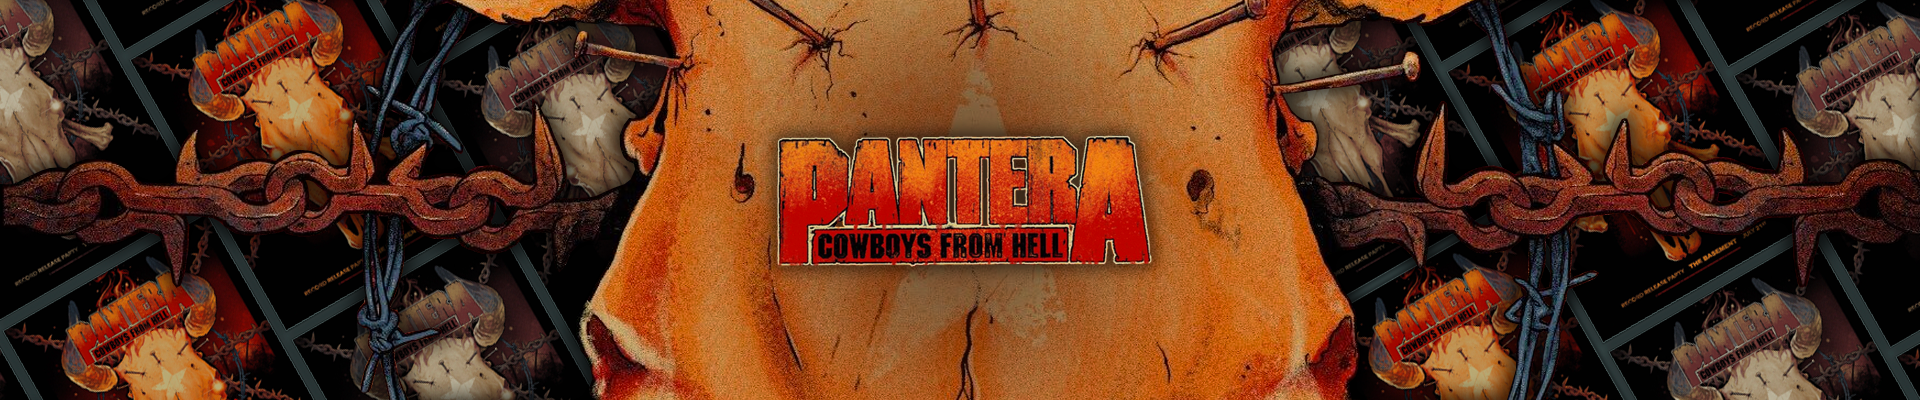 Behind The Poster: Pantera, Dallas, 1990